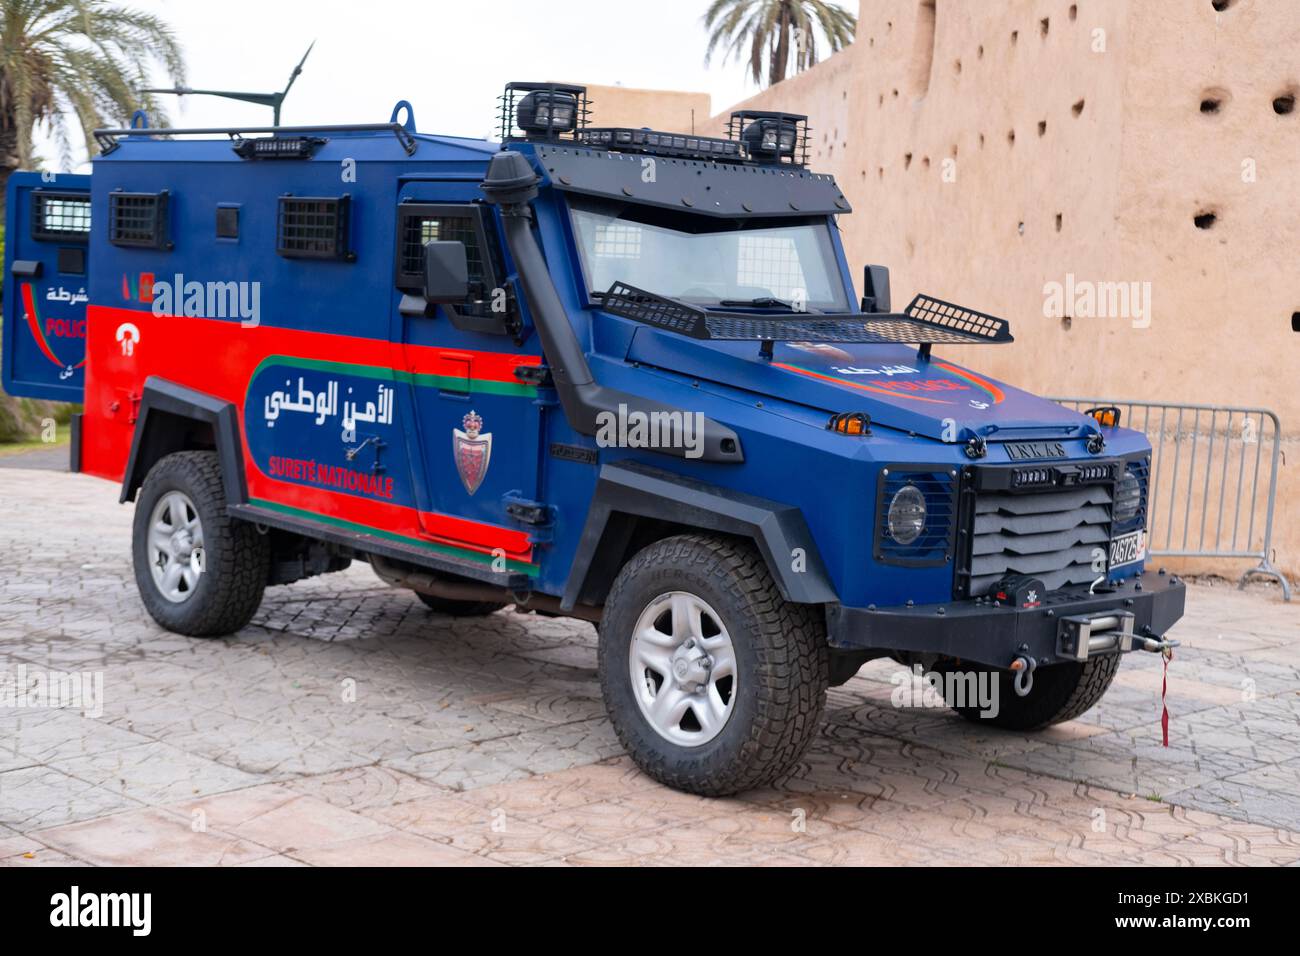 Voiture de police dans les rues de Marrakech, sécurité publique à Marrakech, service communautaire, la loi et l'ordre maintient nos communautés en sécurité, Marrakech, Maroc - Janu Banque D'Images